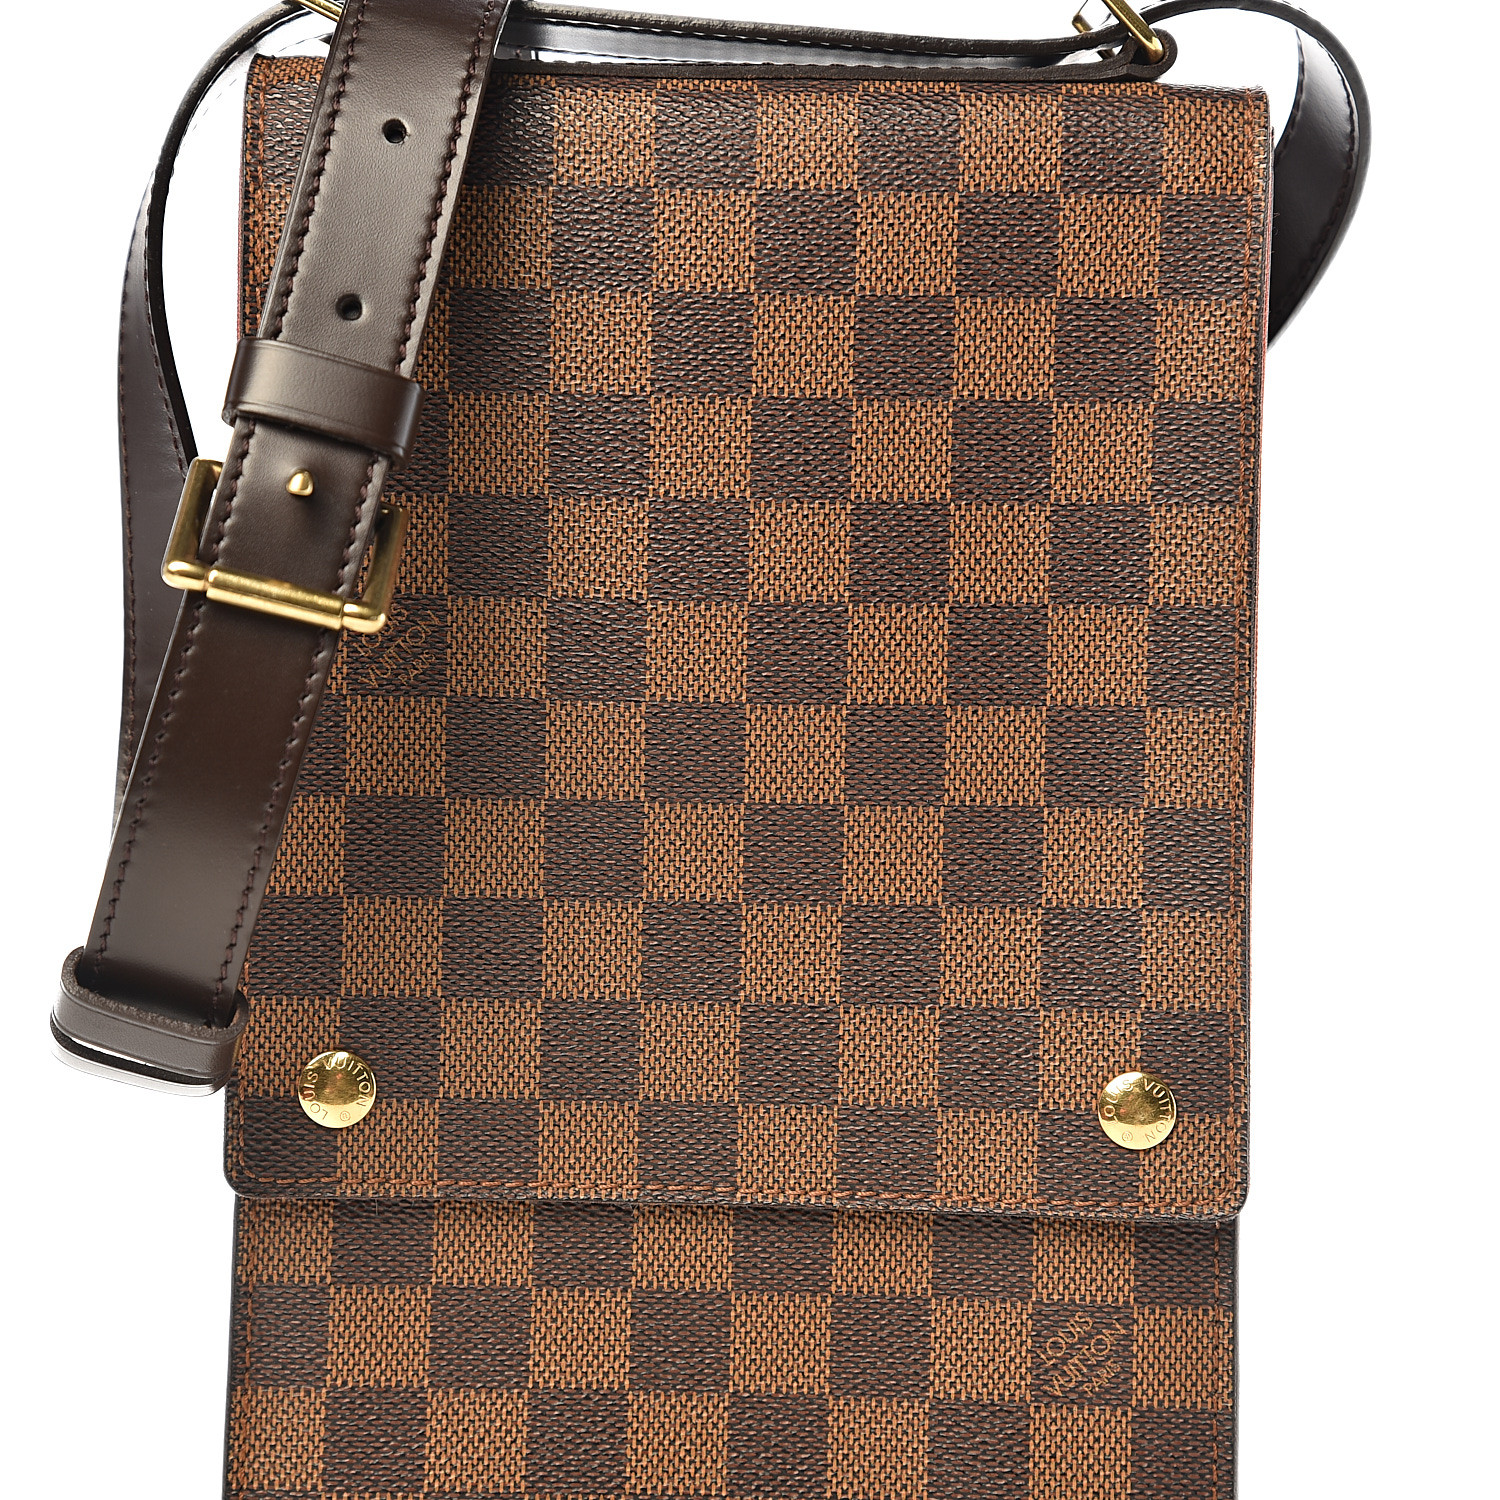 Louis Vuitton Damier Ebene Portobello Travel Shoulder Bag